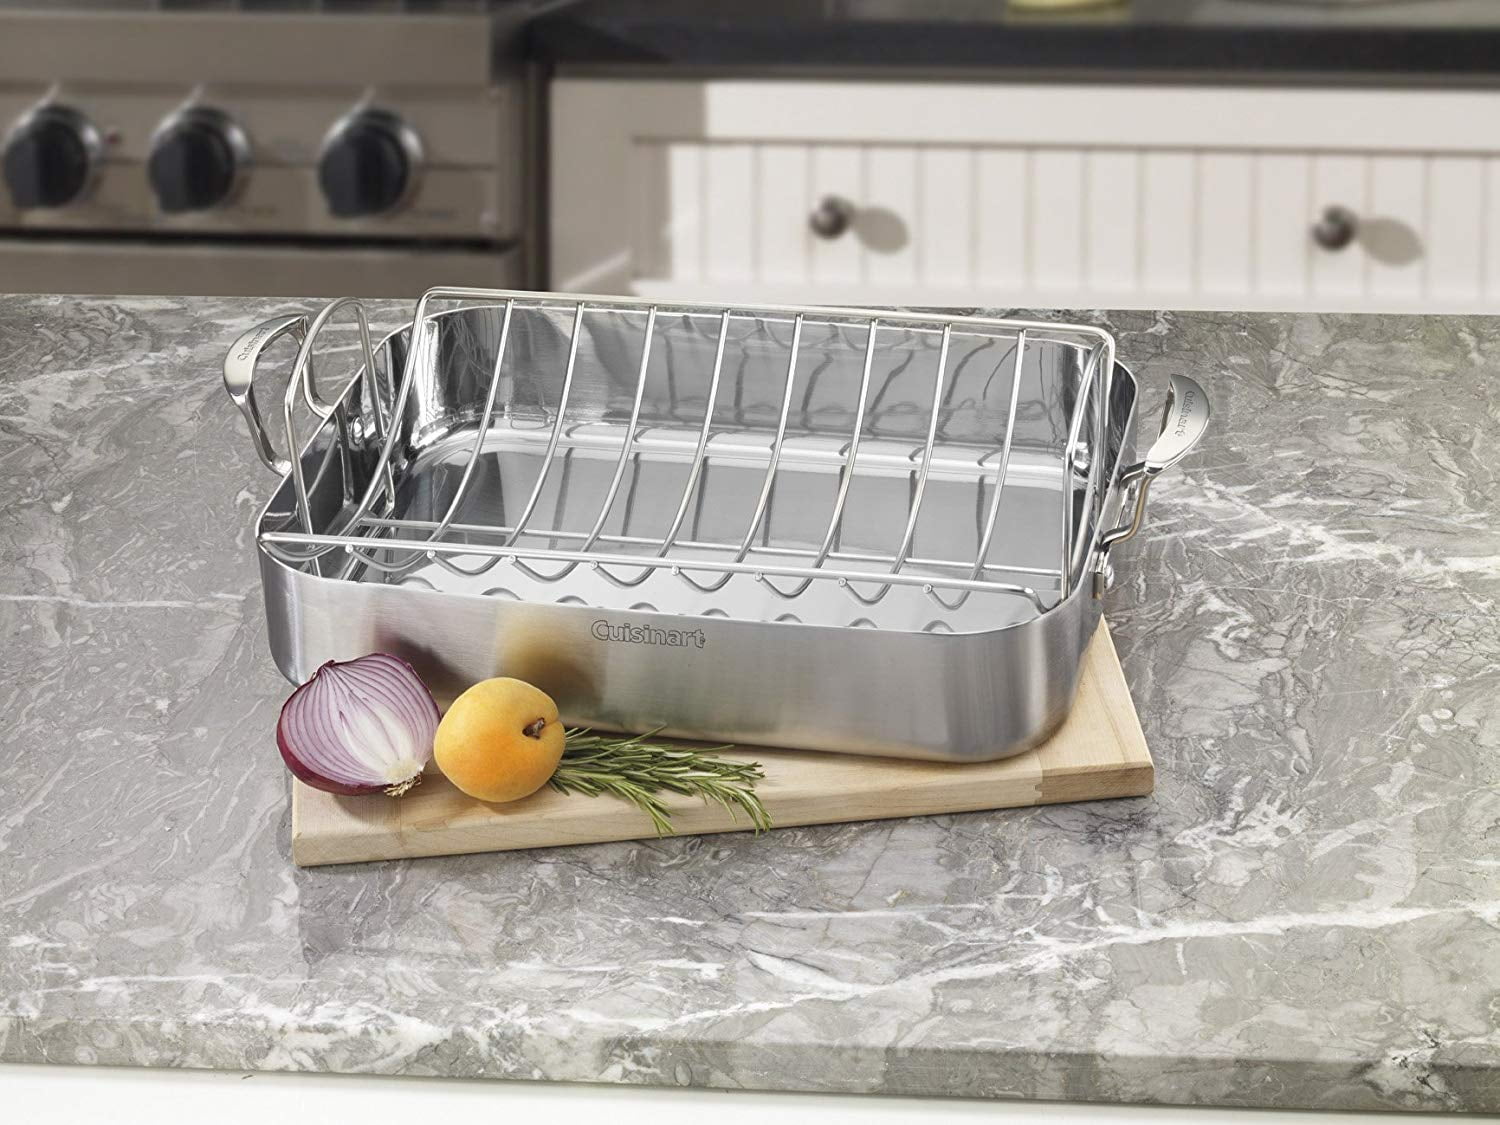 Cuisinart Triply SmartNest Stainless-Steel Roaster 5-Piece Cookware Set